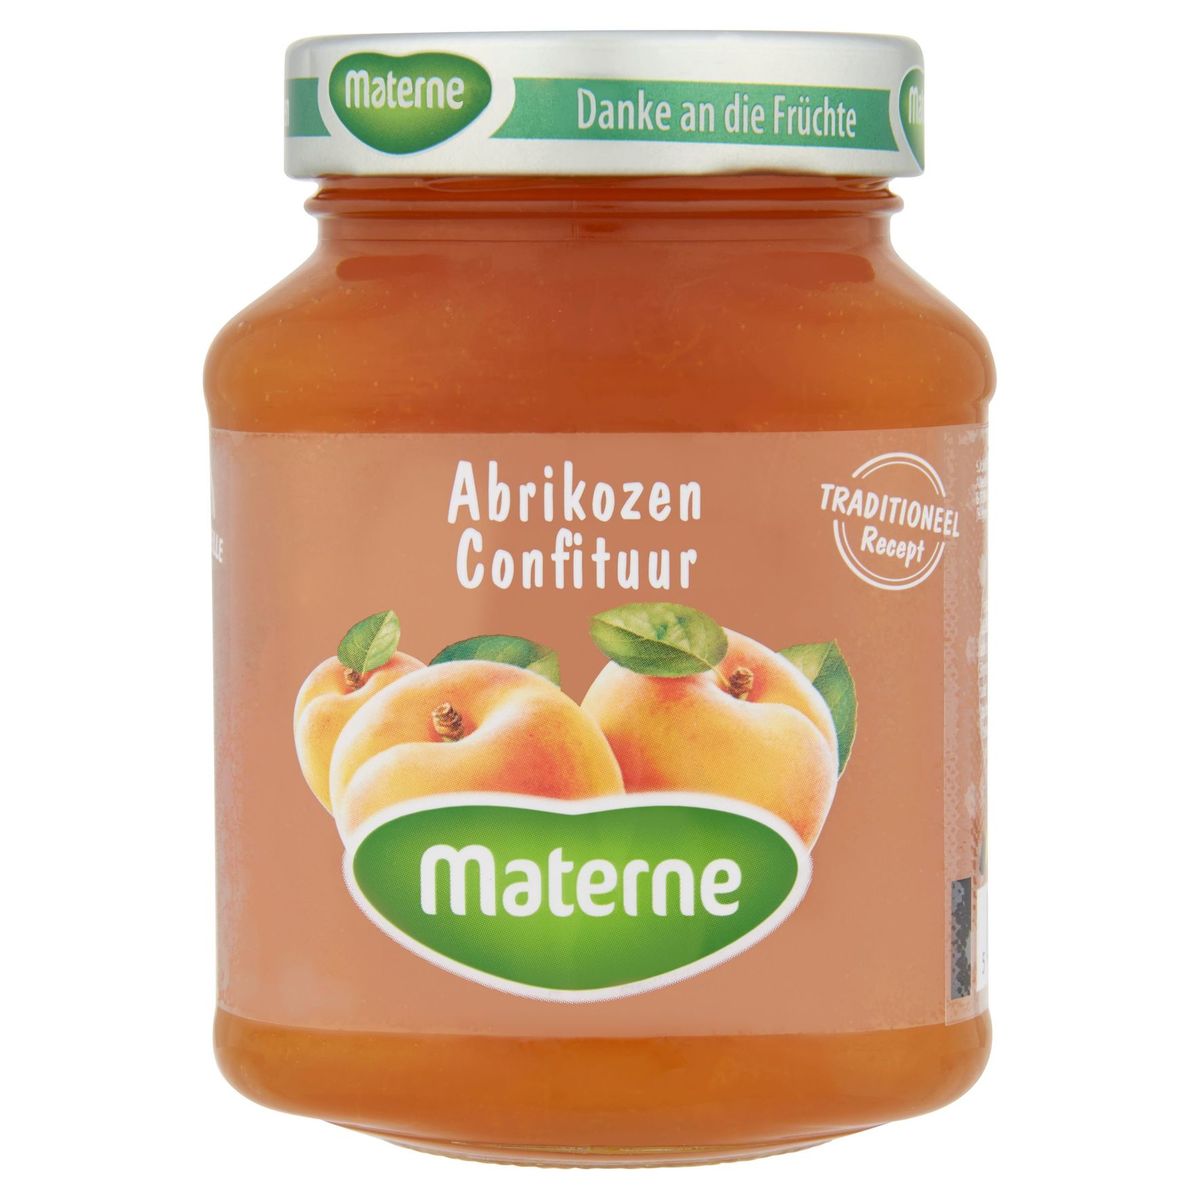 Materne Confiture d'Abricots 450 g